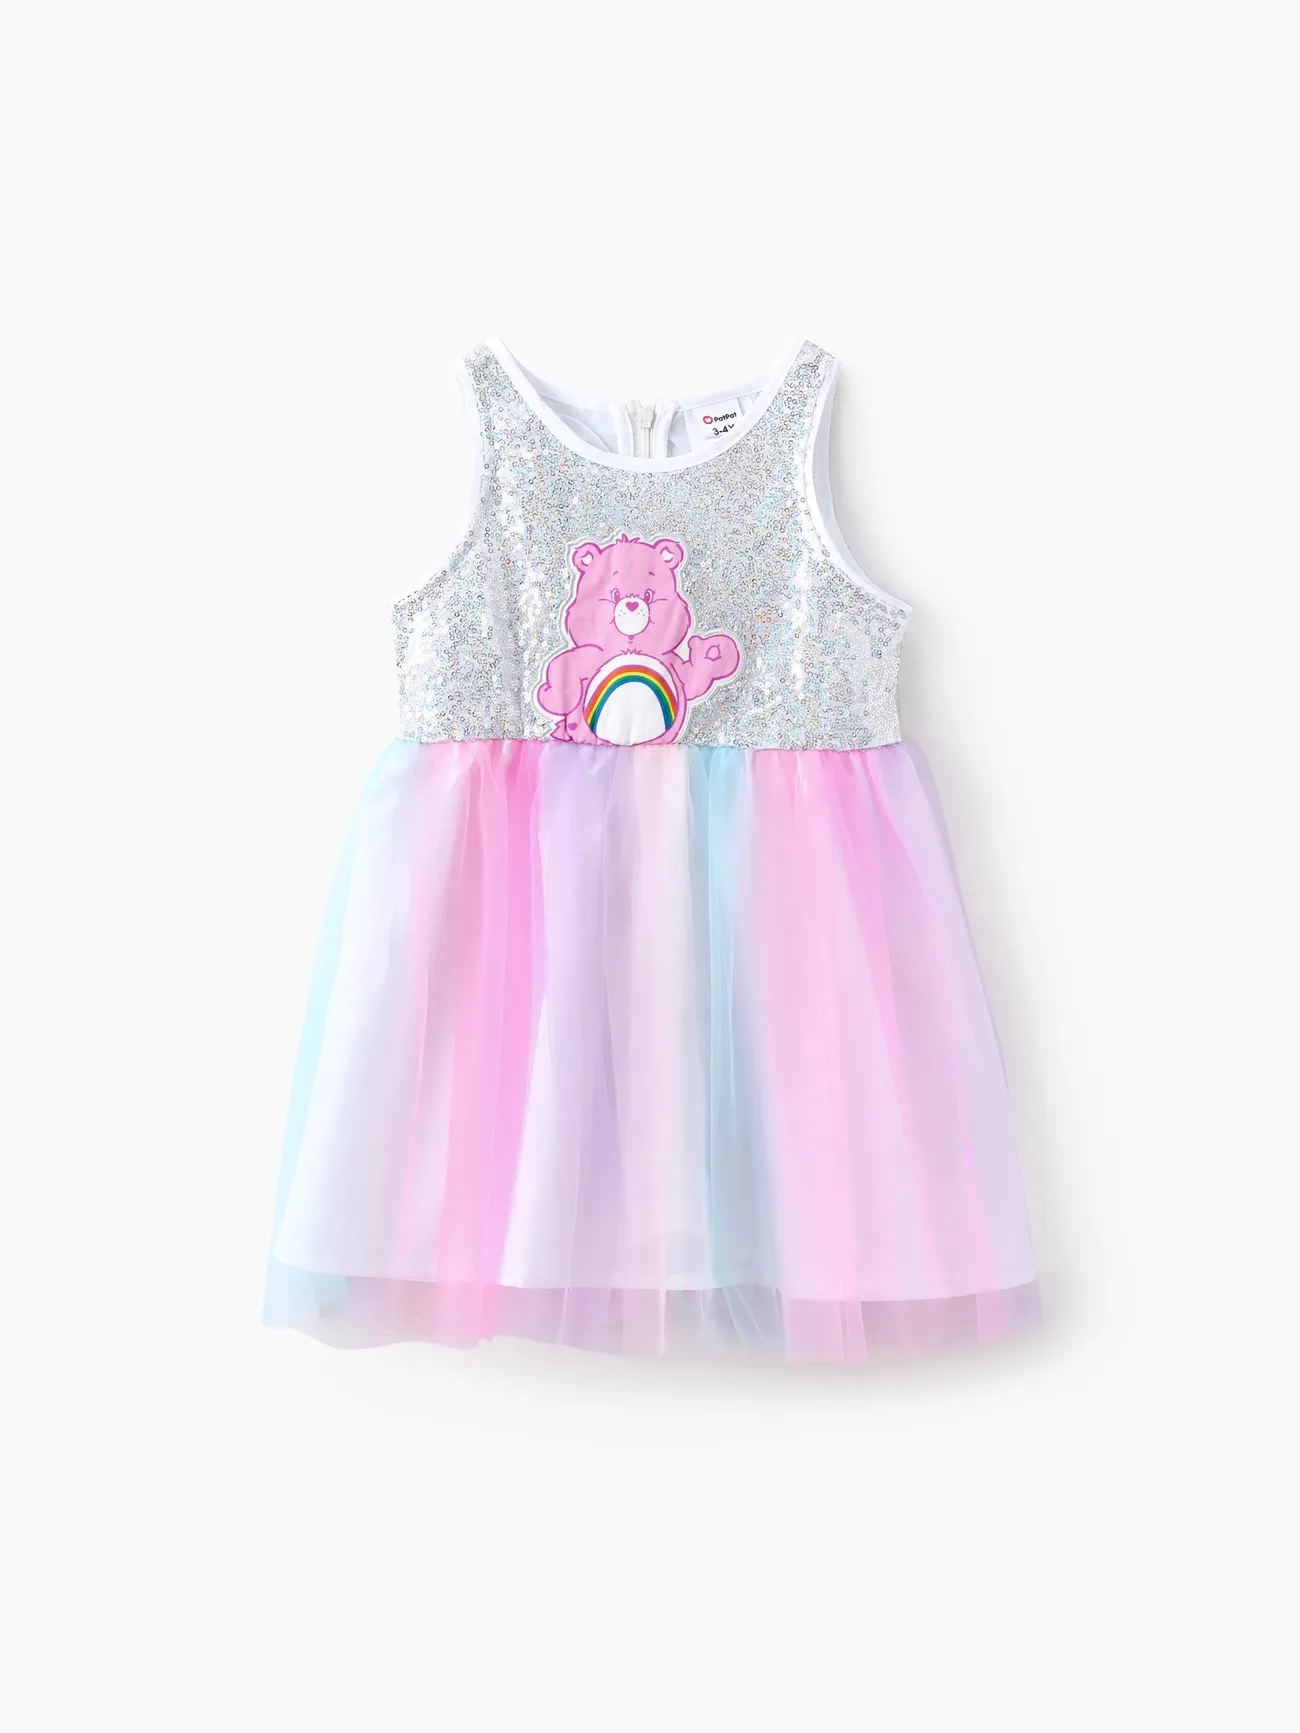 Les Bisounours IP Fille Couture de tissus Enfantin Robes Multicolore big image 1